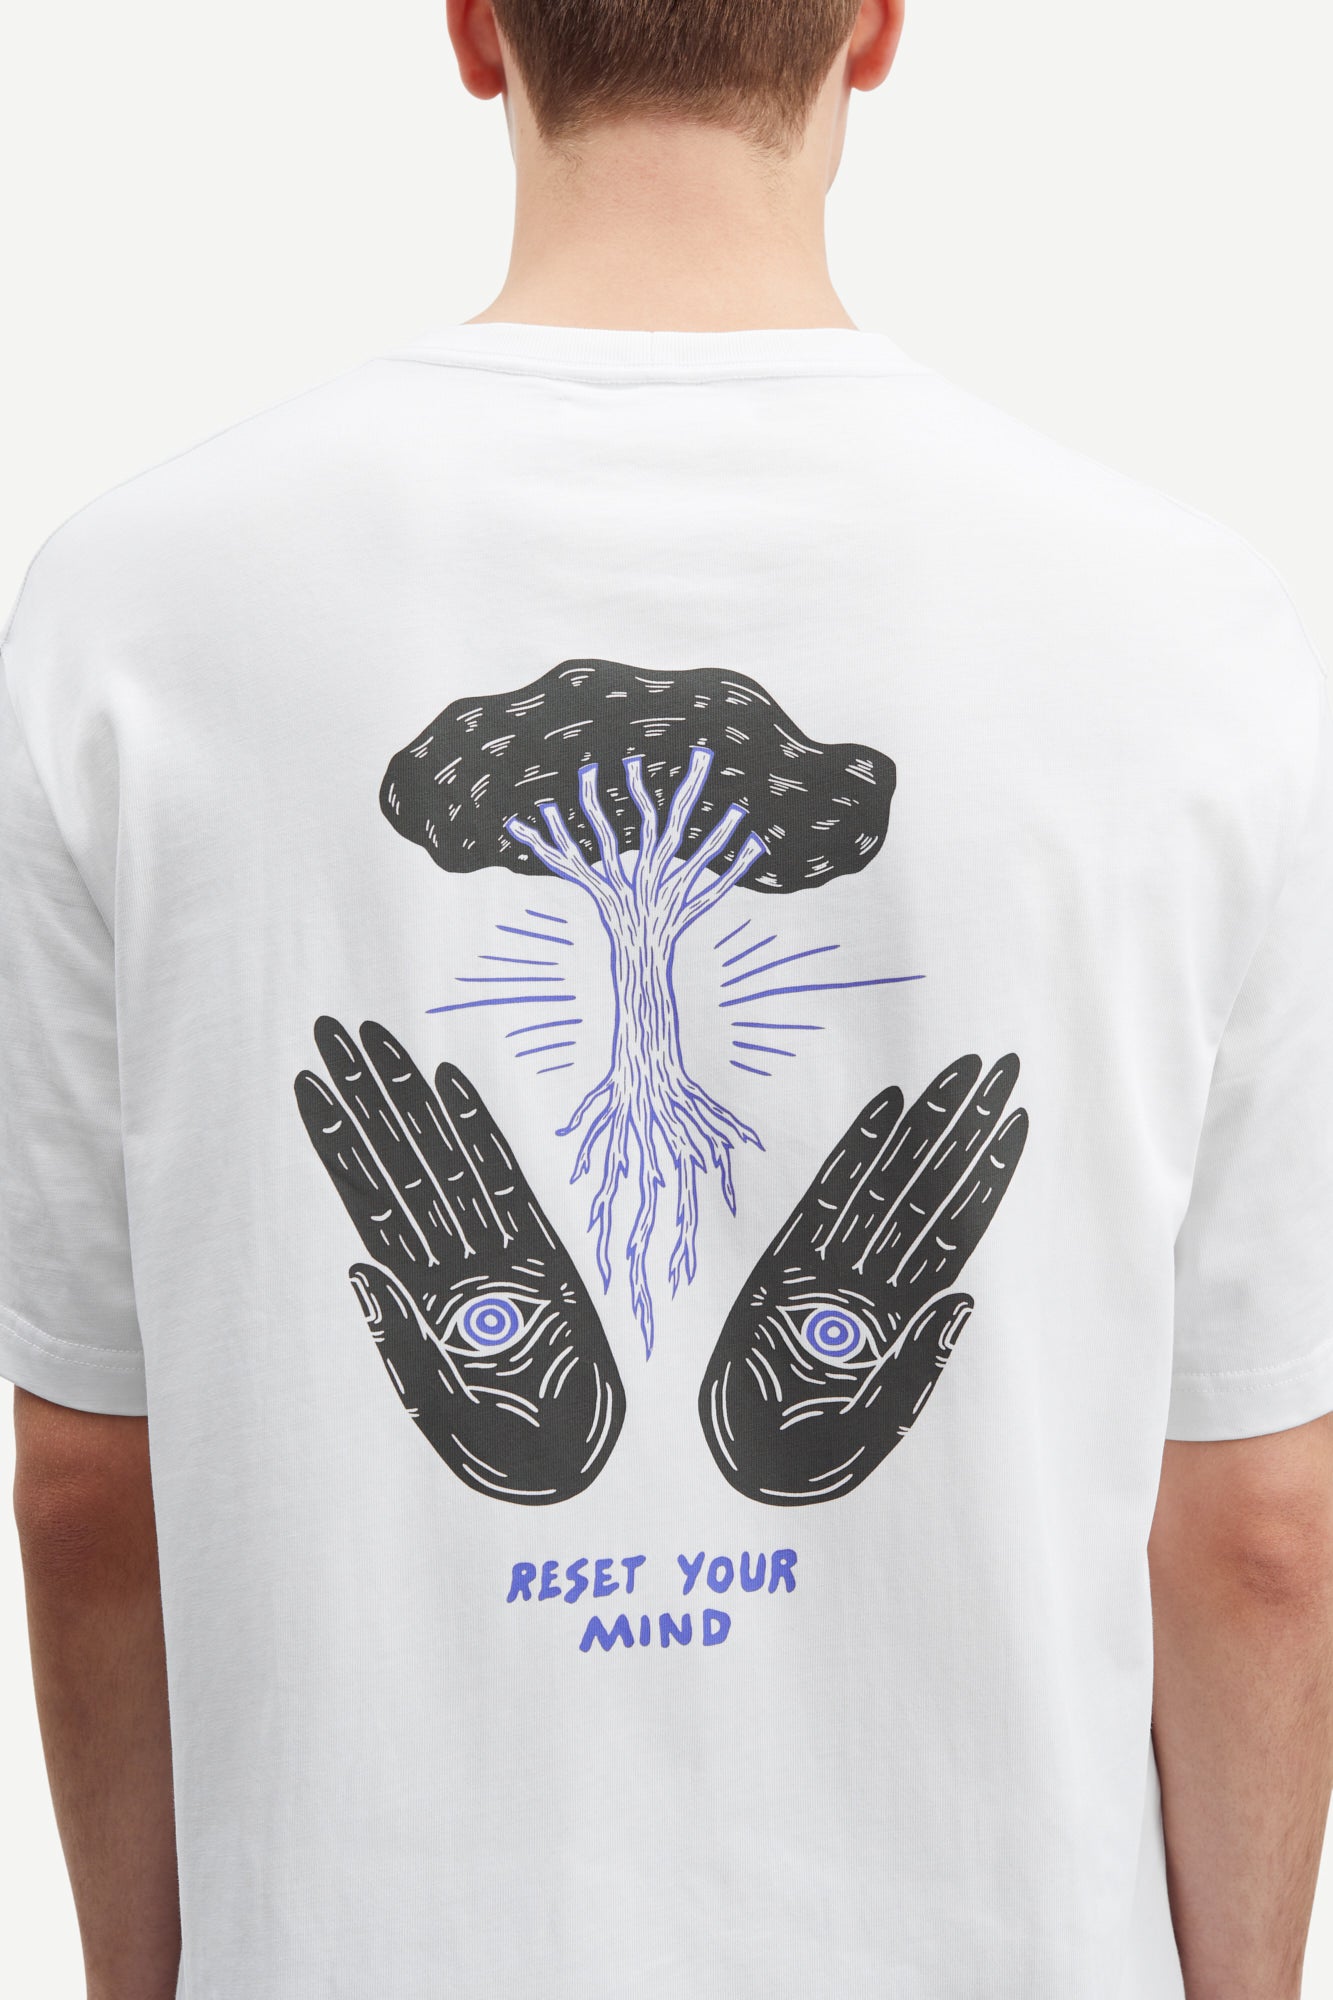 Handsforfeet T-Shirt - Reset Your Mind